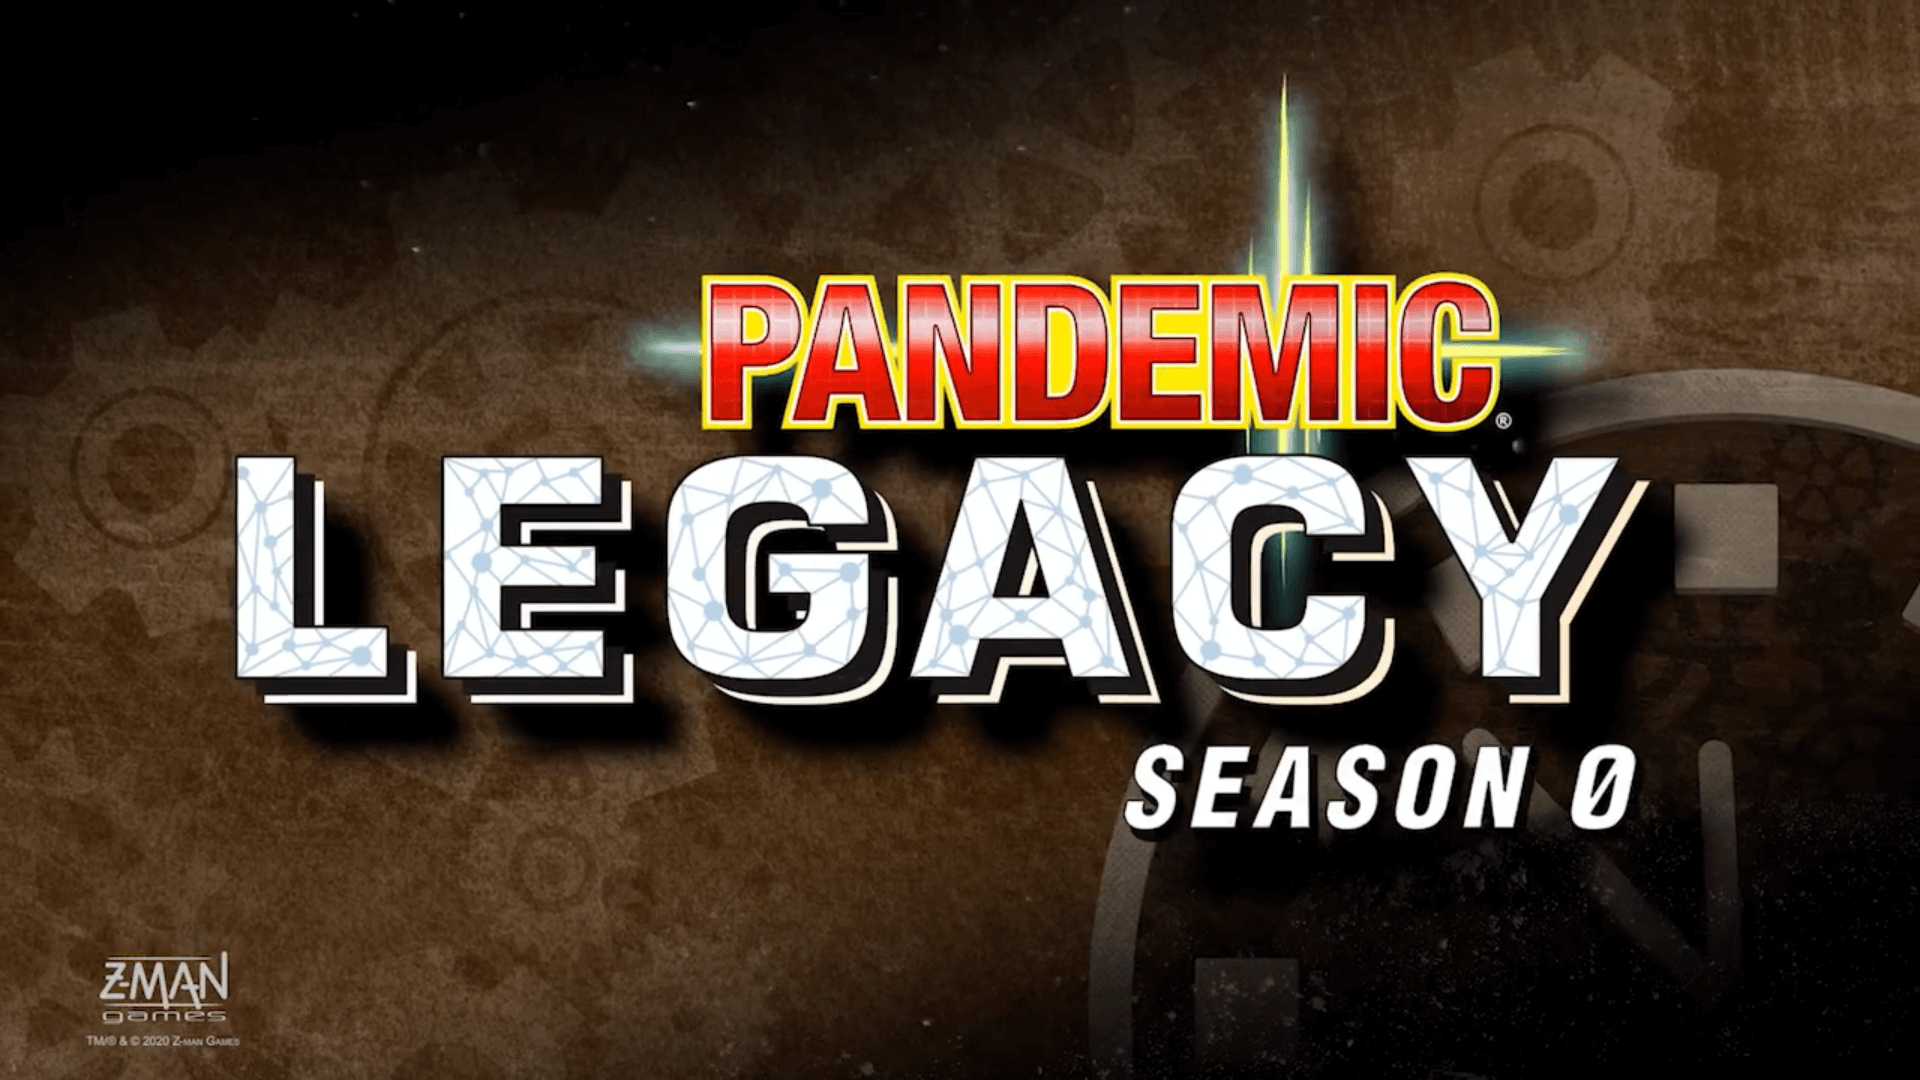 Pandemic Legacy Season 3 wordt een prequel